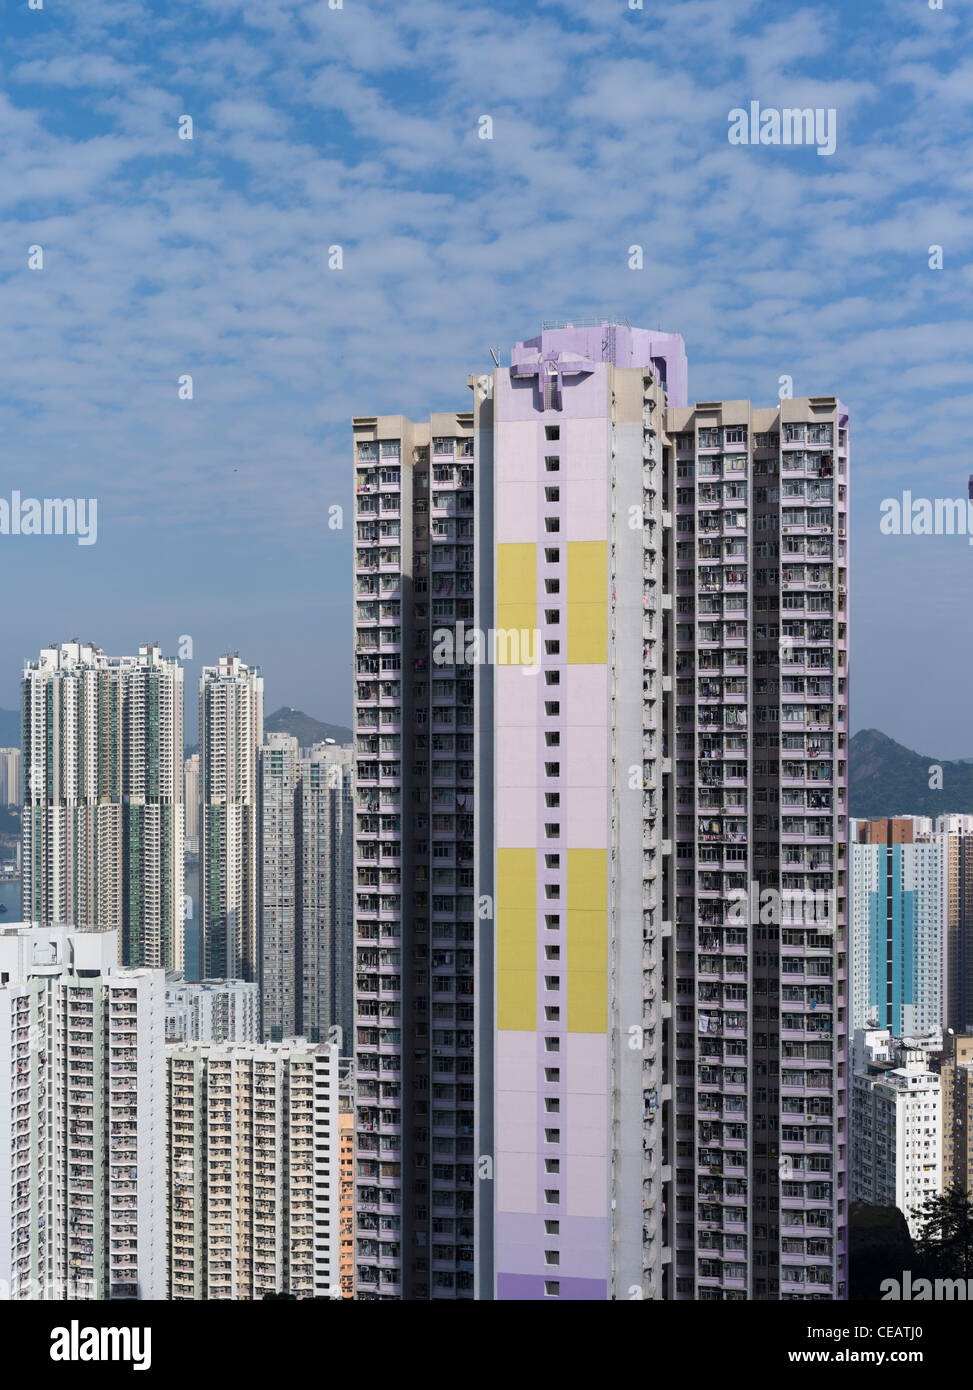 dh Shau Kei Wan QUARRY BAY HONG KONG Tung Hei Court Home Ownership Scheme housing buildings dense flats Stock Photo